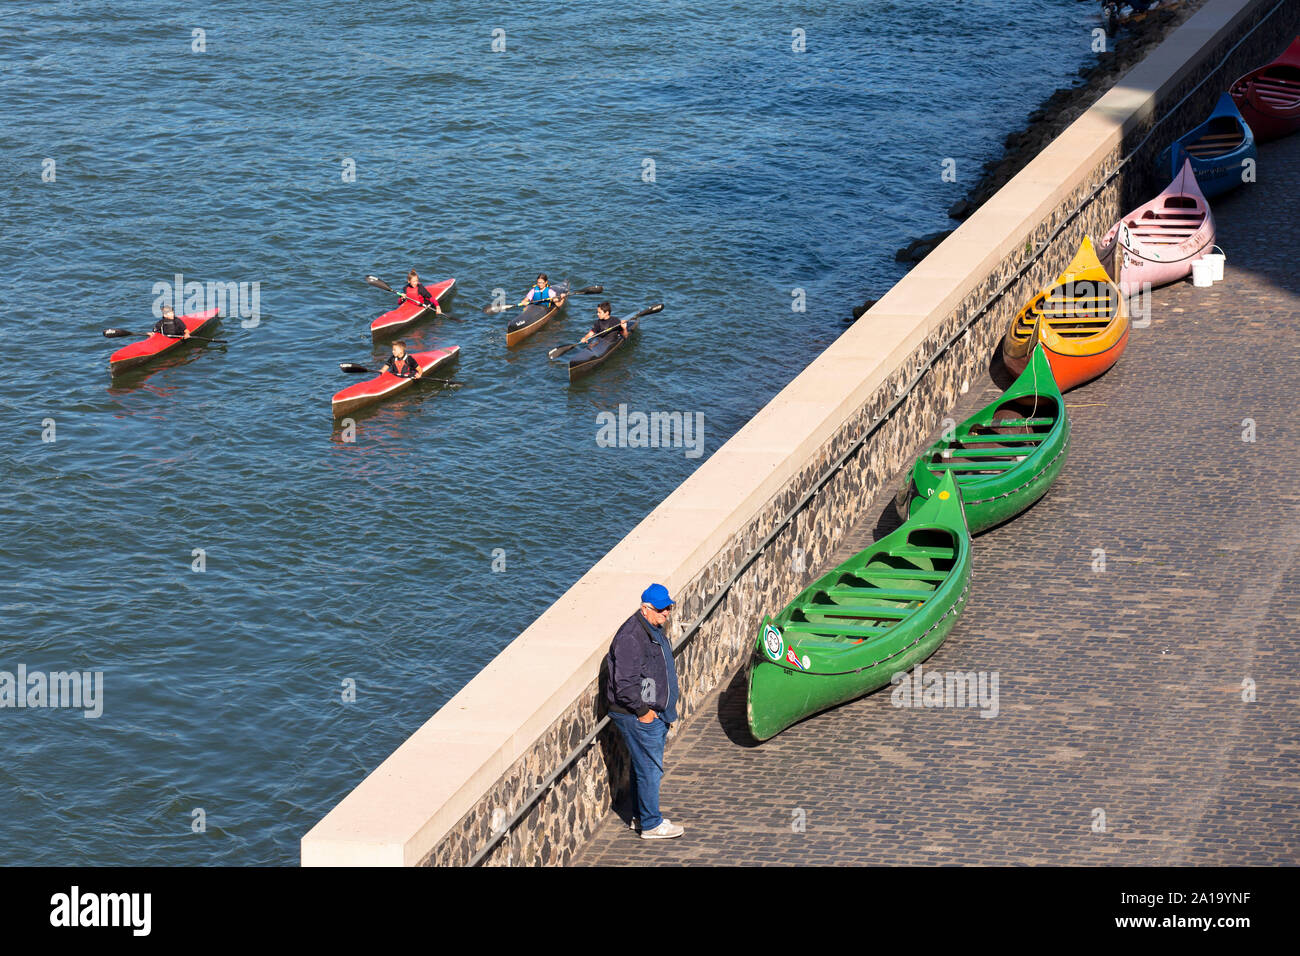 Kayak sur le Rhin, Cologne, Allemagne. Kajakfahrer auf dem Rhein, Koeln, Deutschland. Banque D'Images